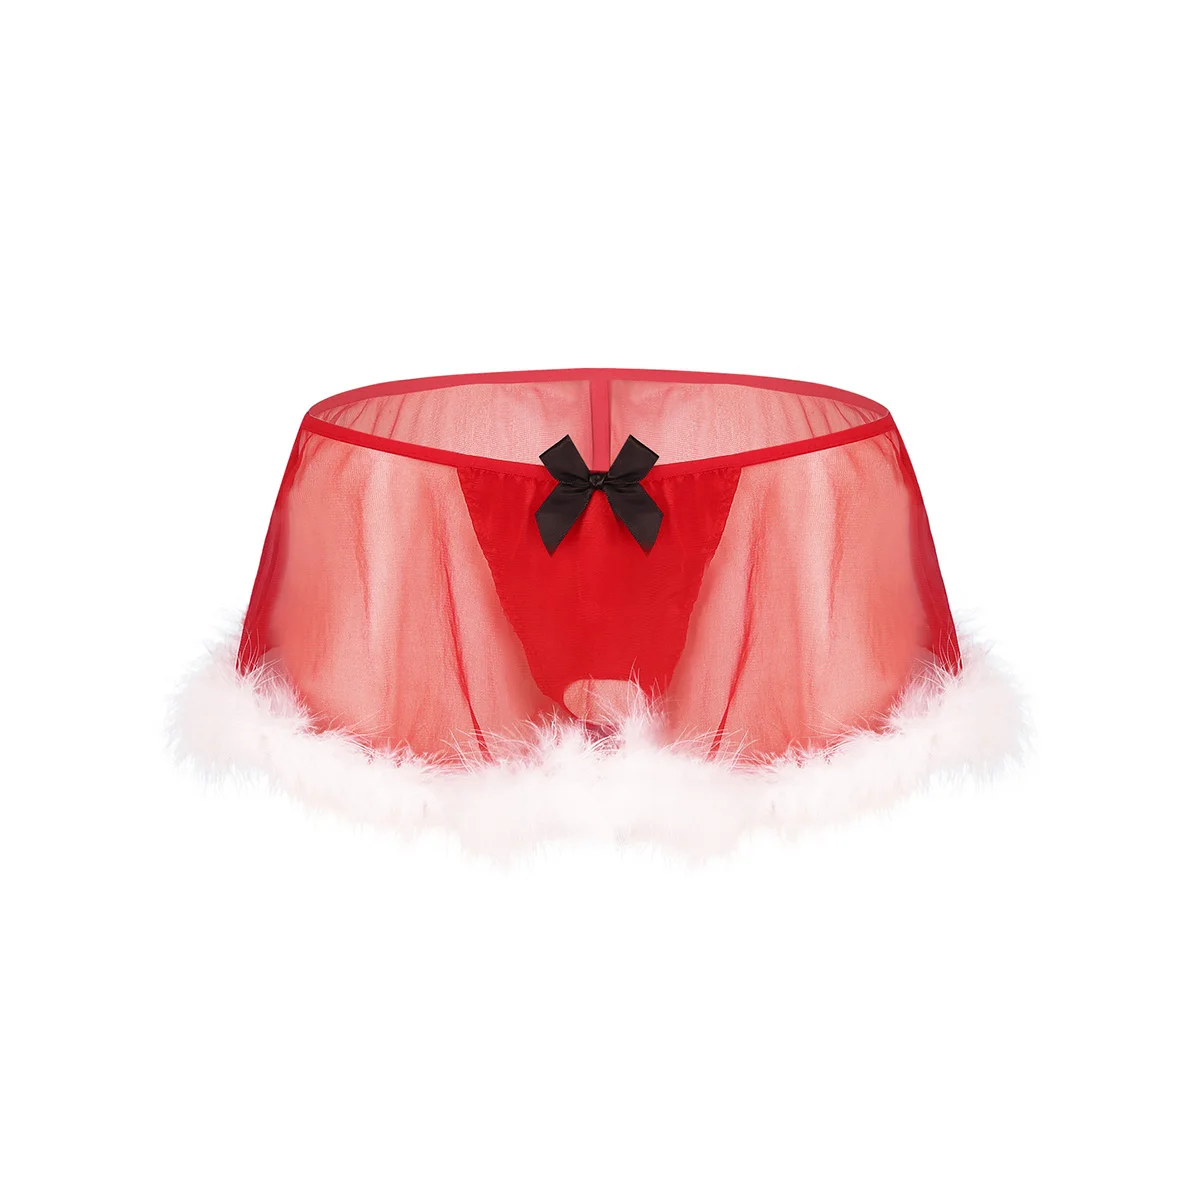 Мужское белье, трусики для Сисси, Рождественский костюм Санты, прозрачные, прозрачные, эластичные, низкая посадка, белые, с перьями, стринги, трусики, юбка - Цвет: Red